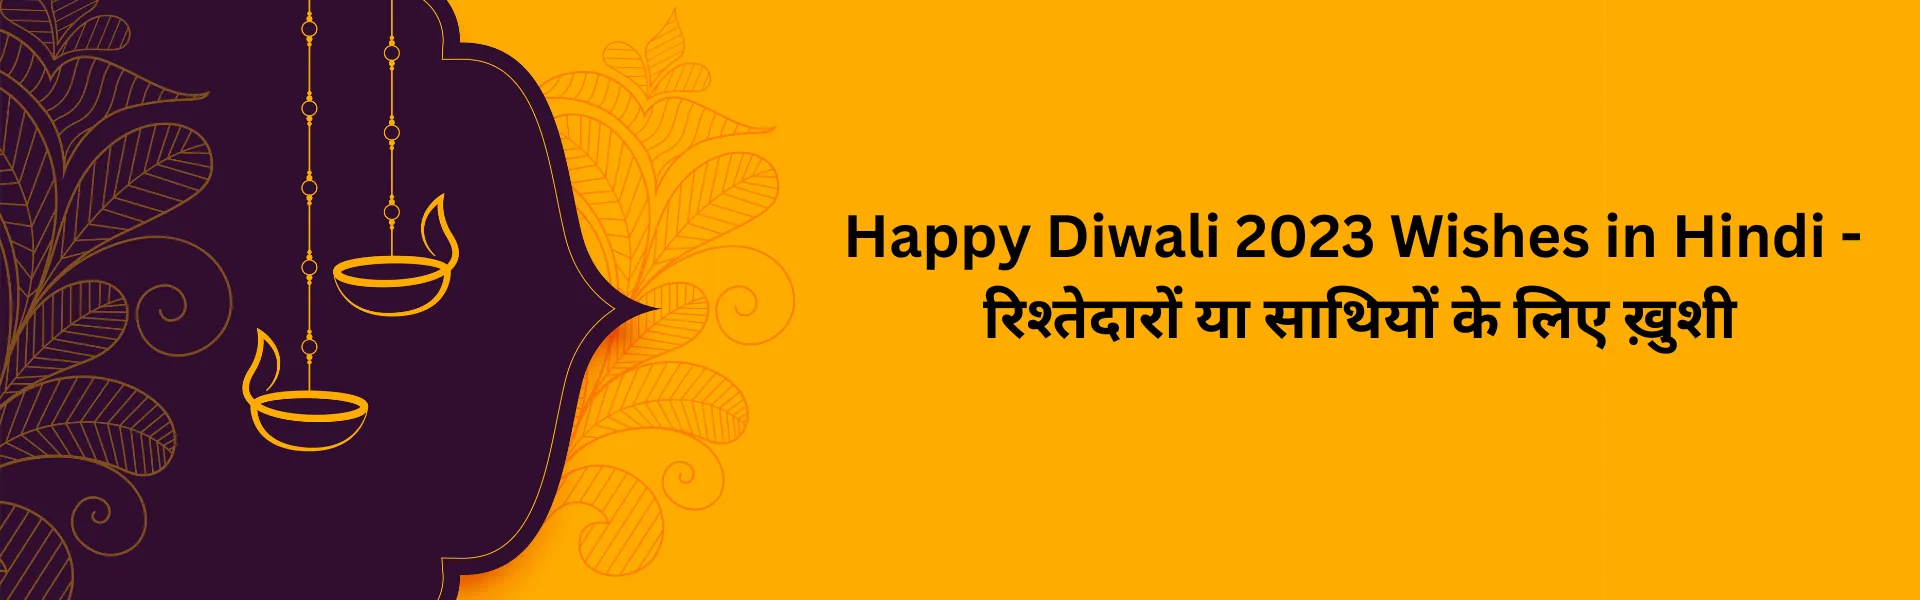 Happy Diwali 2023 Wishes in Hindi - रिश्तेदारों या साथियों के लिए ख़ुशी